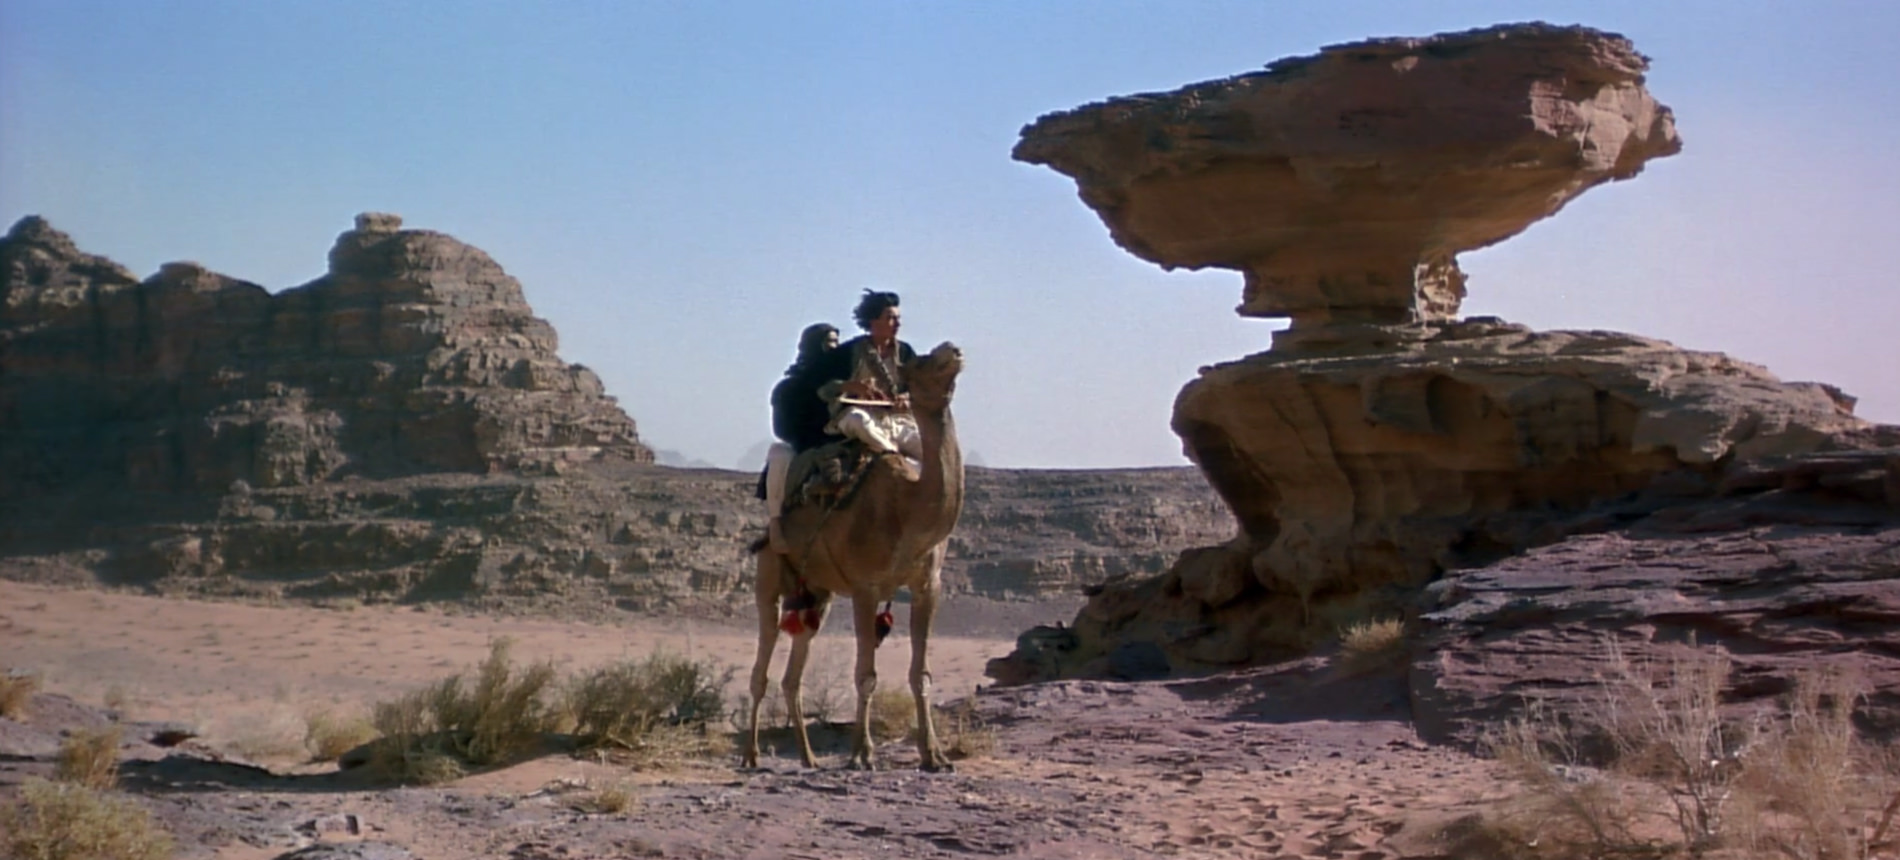 Cinéma Lawrence d'Arabie / Lawrence of Arabia par David Lean (1962) Avec Peter O'Toole, Omar Sharif, Alec Guinness, Anthony Quinn — Musique de Maurice Jarre